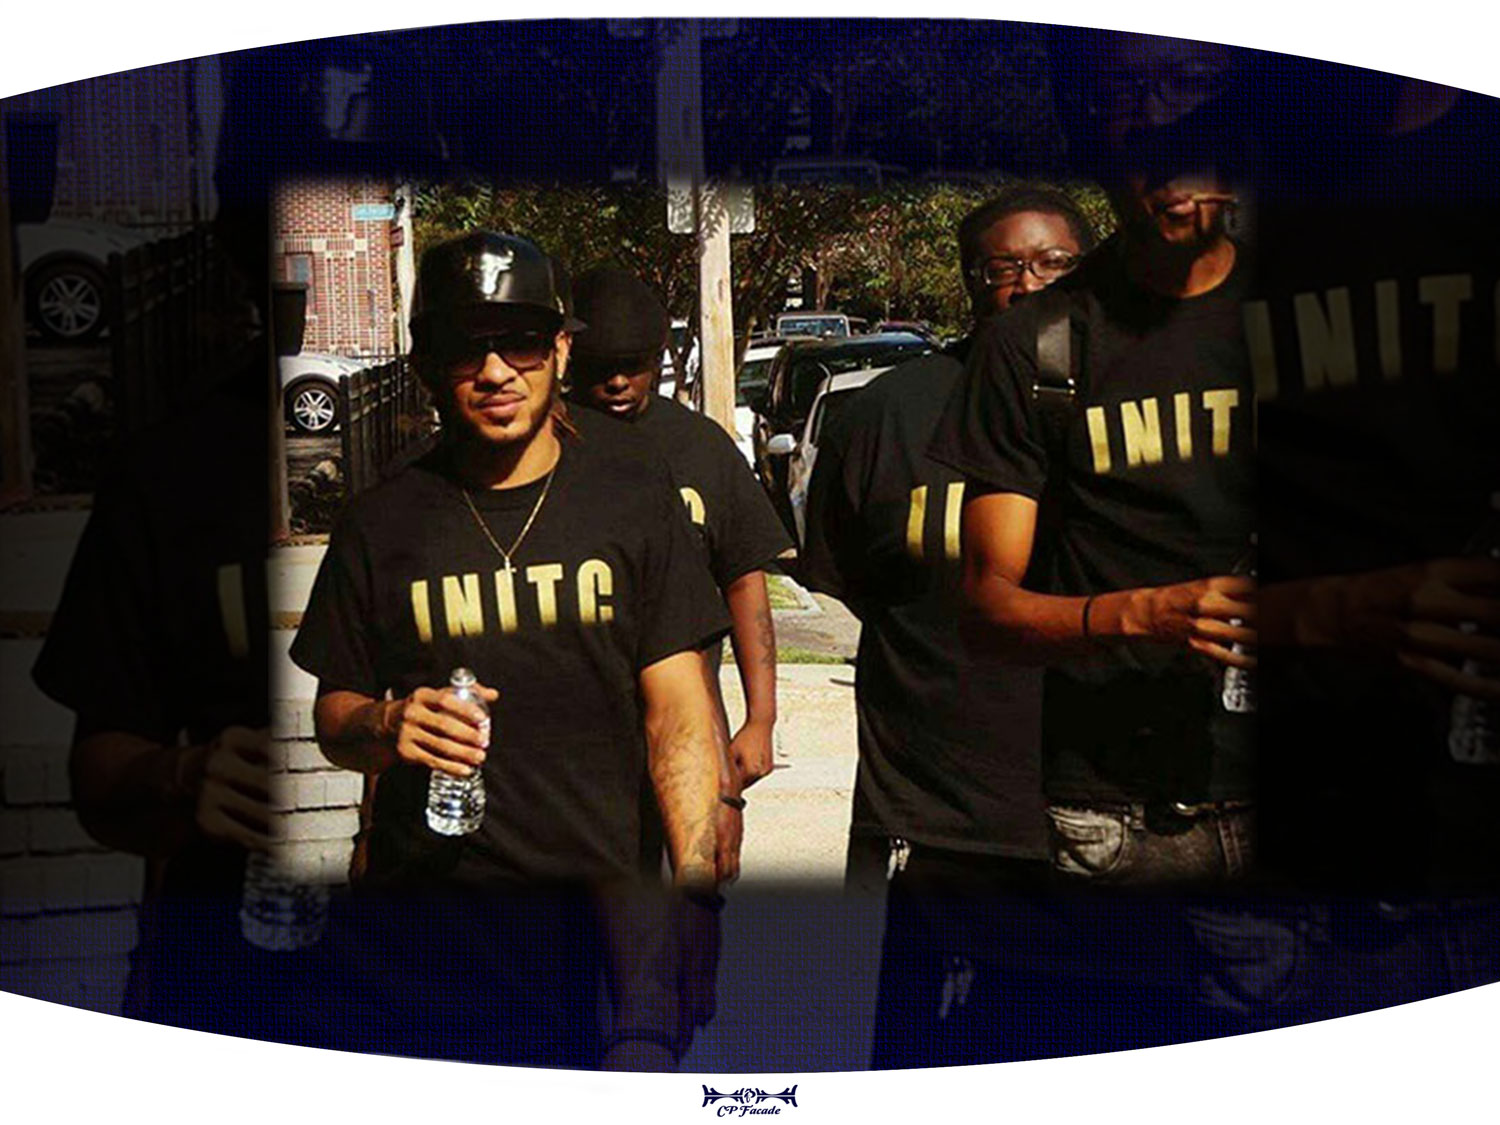 Custom screenprinted black INITC t-shirt